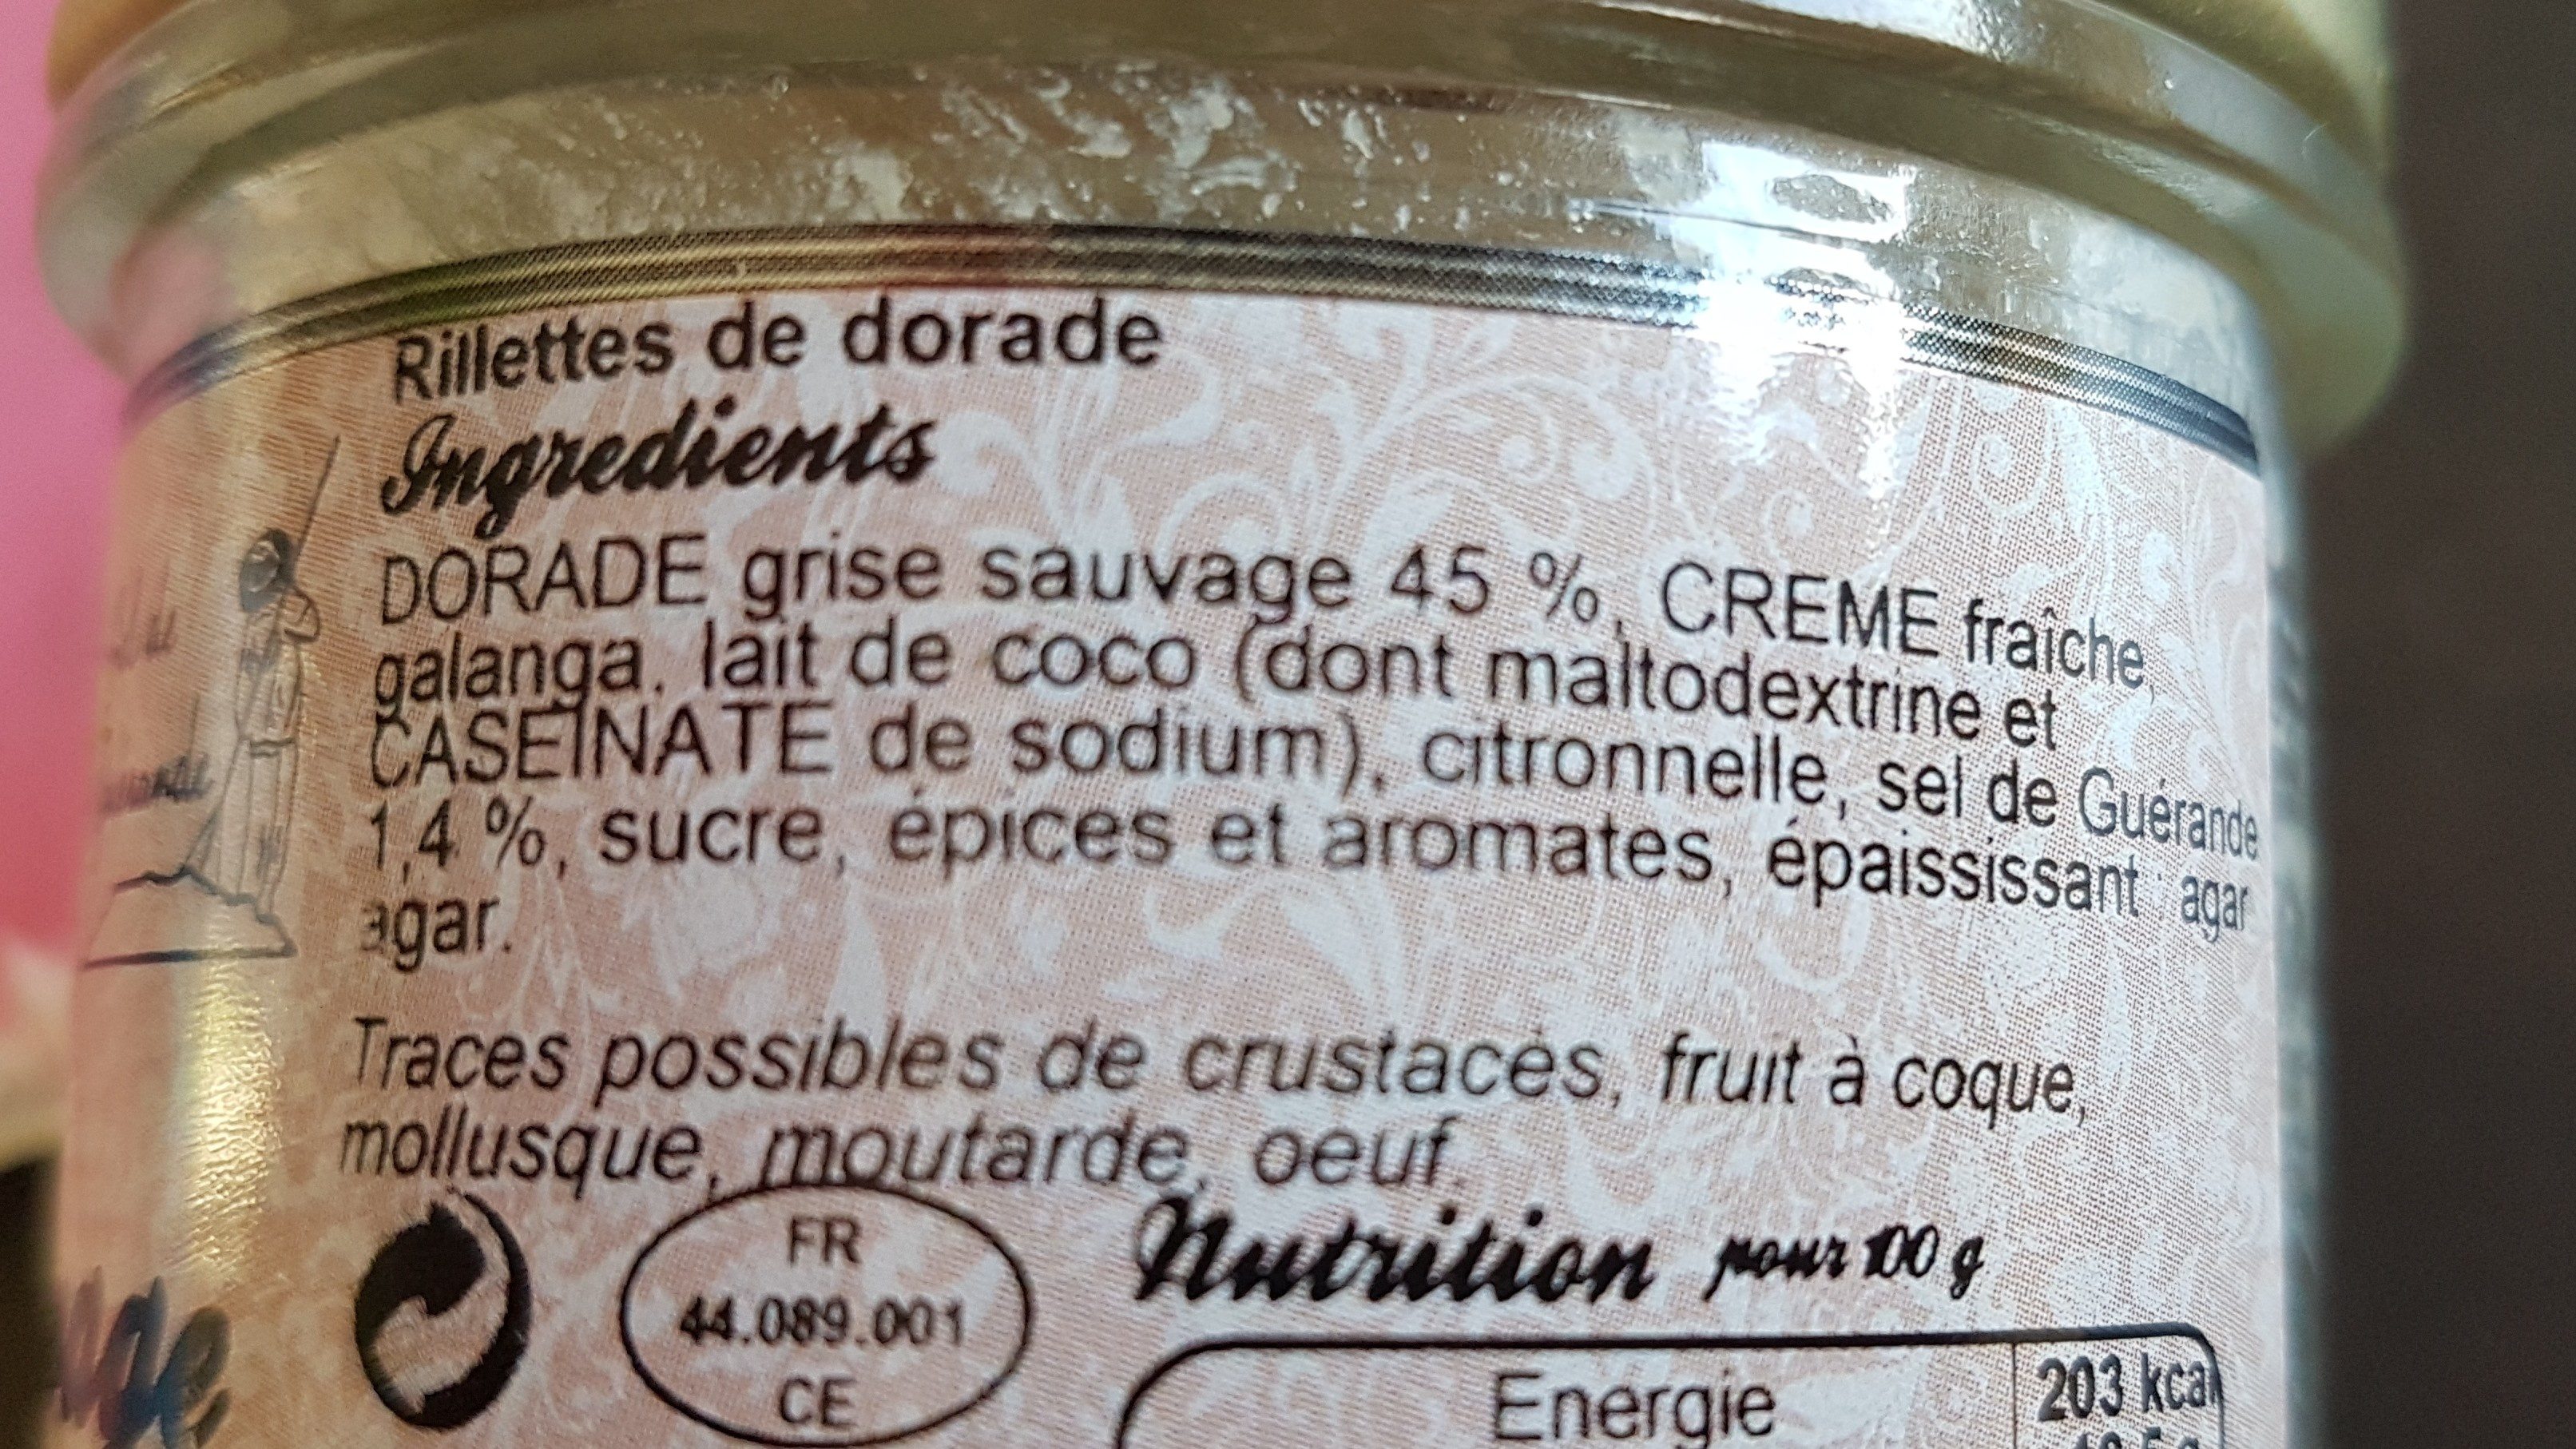 Dorade sauvage - Ingredients - fr